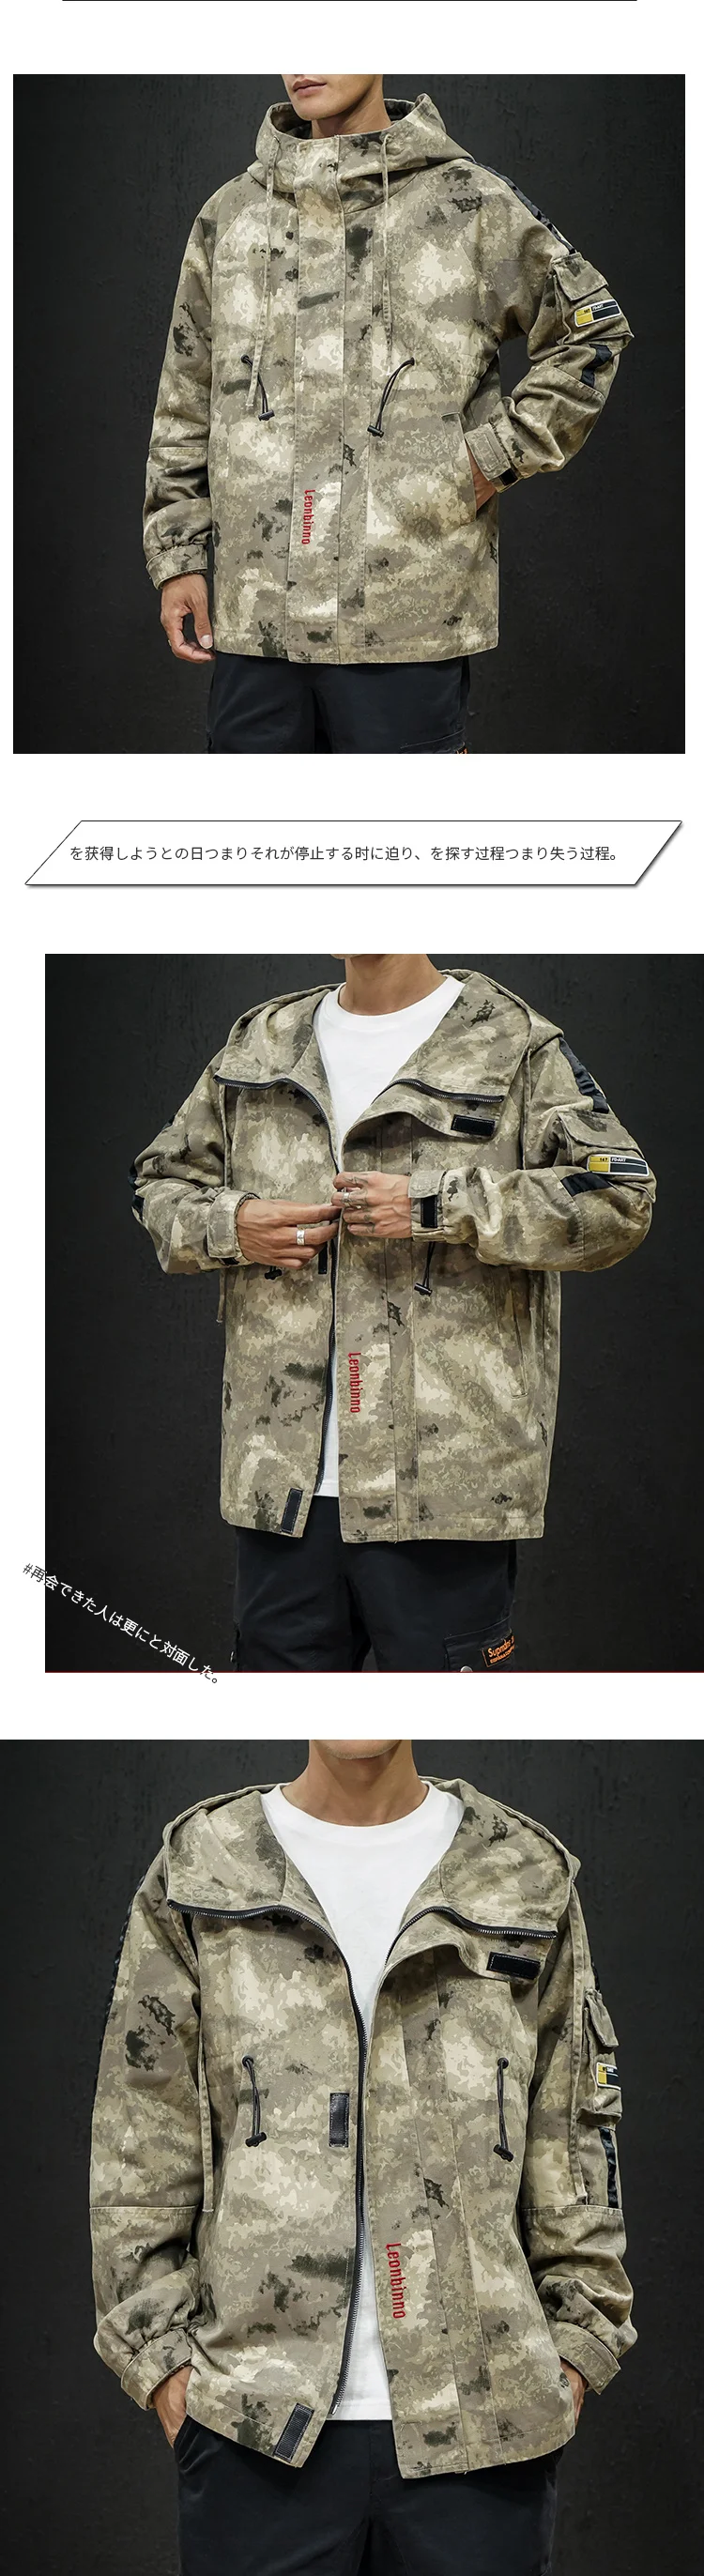 Модная камуфляжная куртка мужская комбинезоны Японская уличная Толстовка Военный стиль пальто тактическая куртка хип хоп Корейская одежда